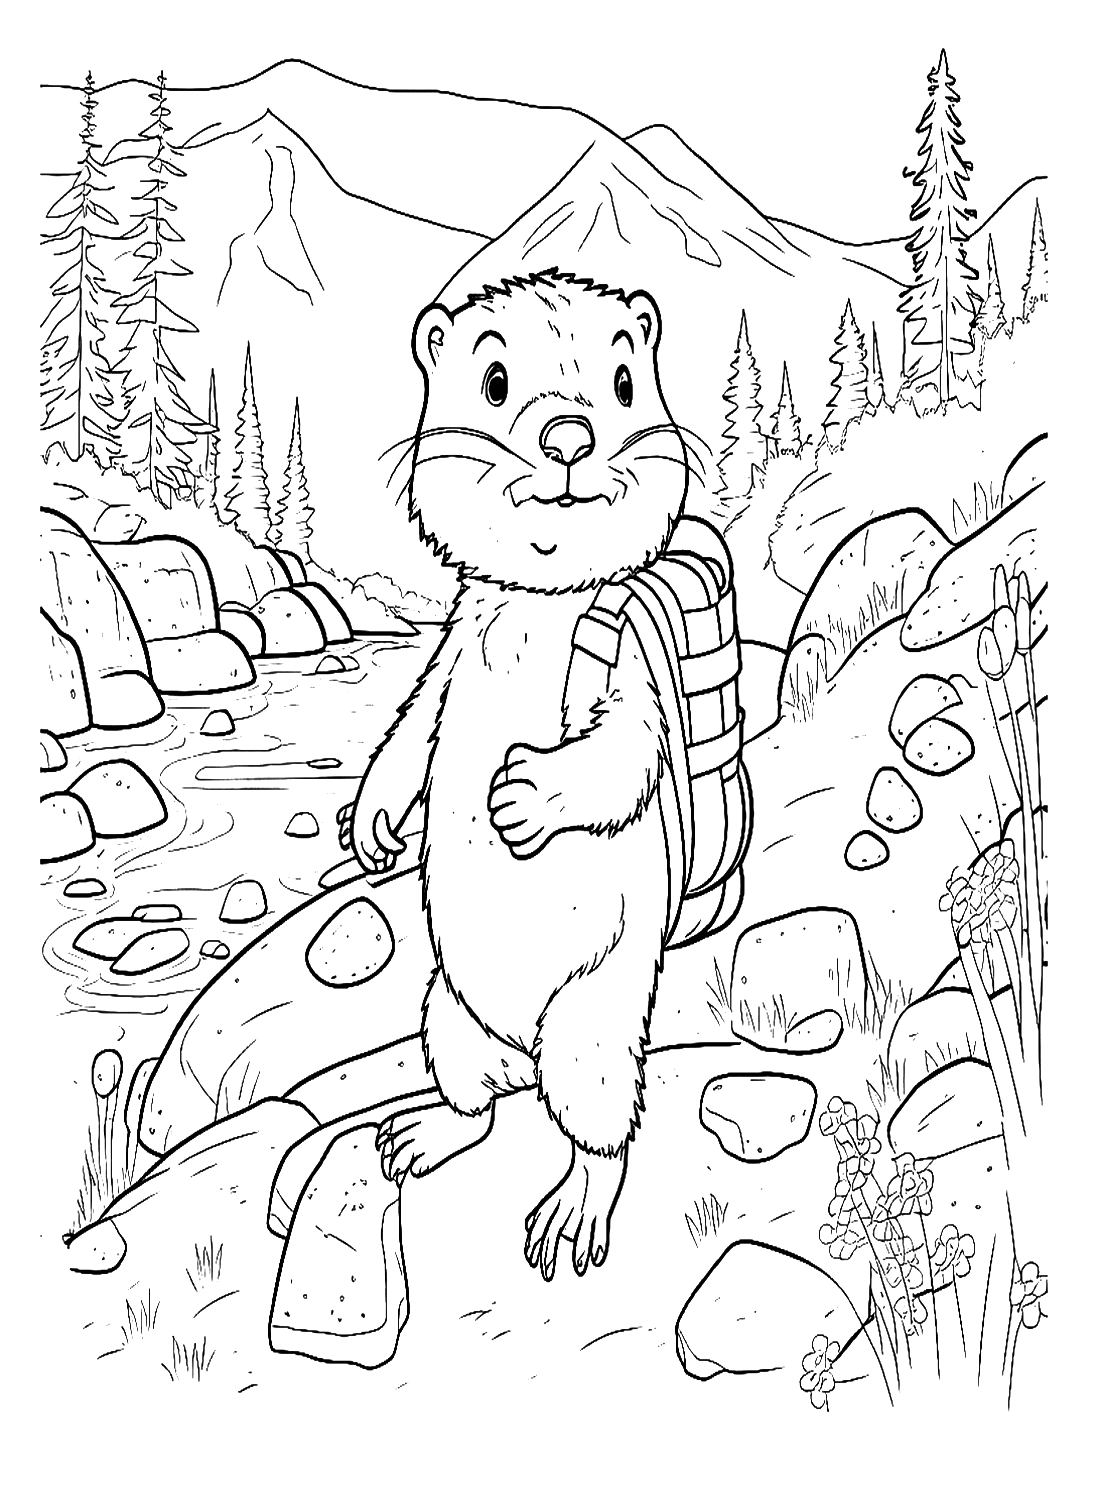 Marmot loopt op de oever van de rivier van Marmot